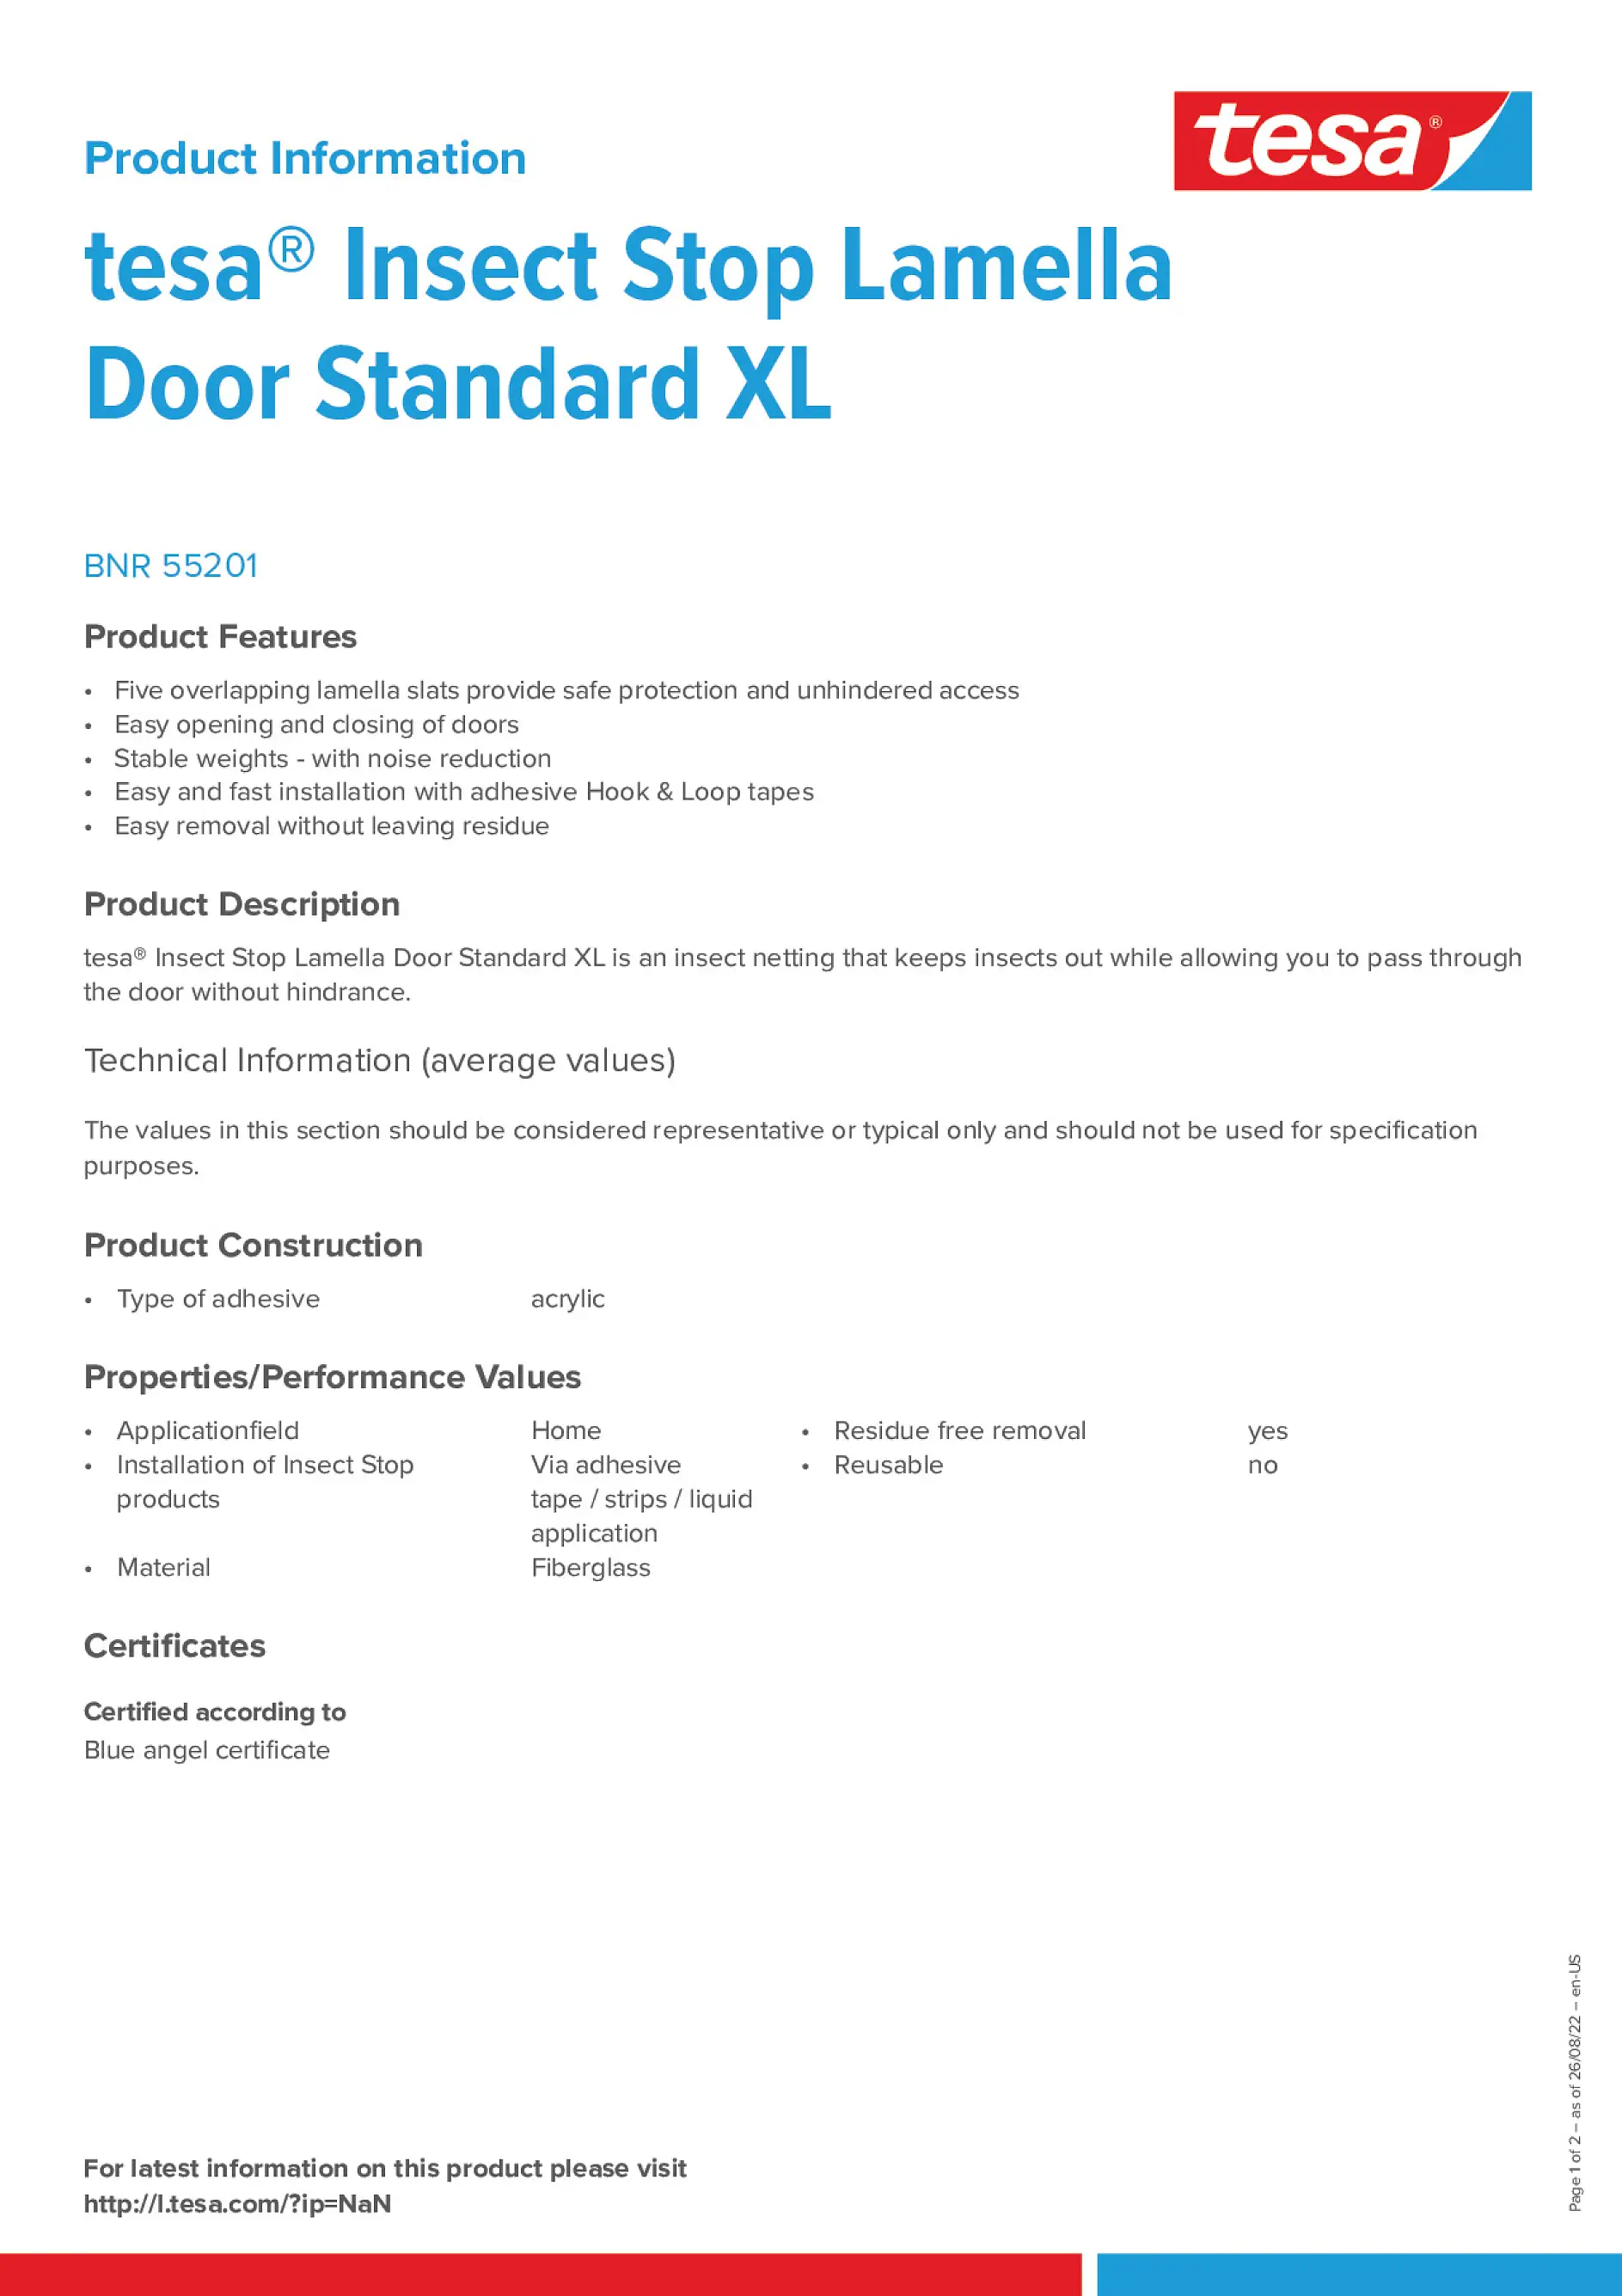 insect-lamella-door-standard-xl_en-US